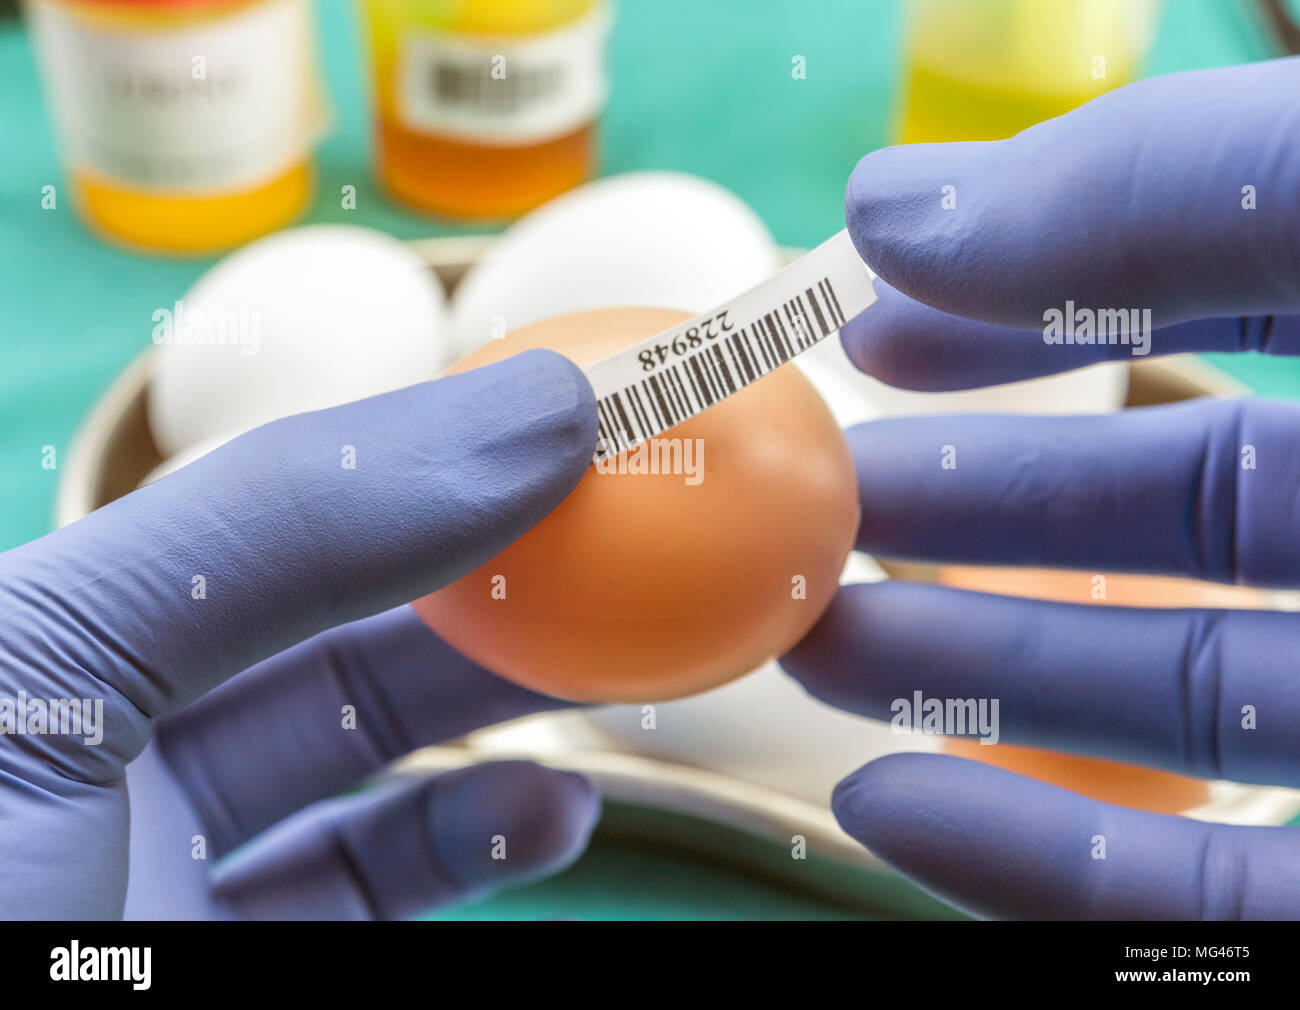 Marque scientifique avec les œufs label en mauvais état d'examiner dans le laboratoire, clinique, conceptual image Banque D'Images